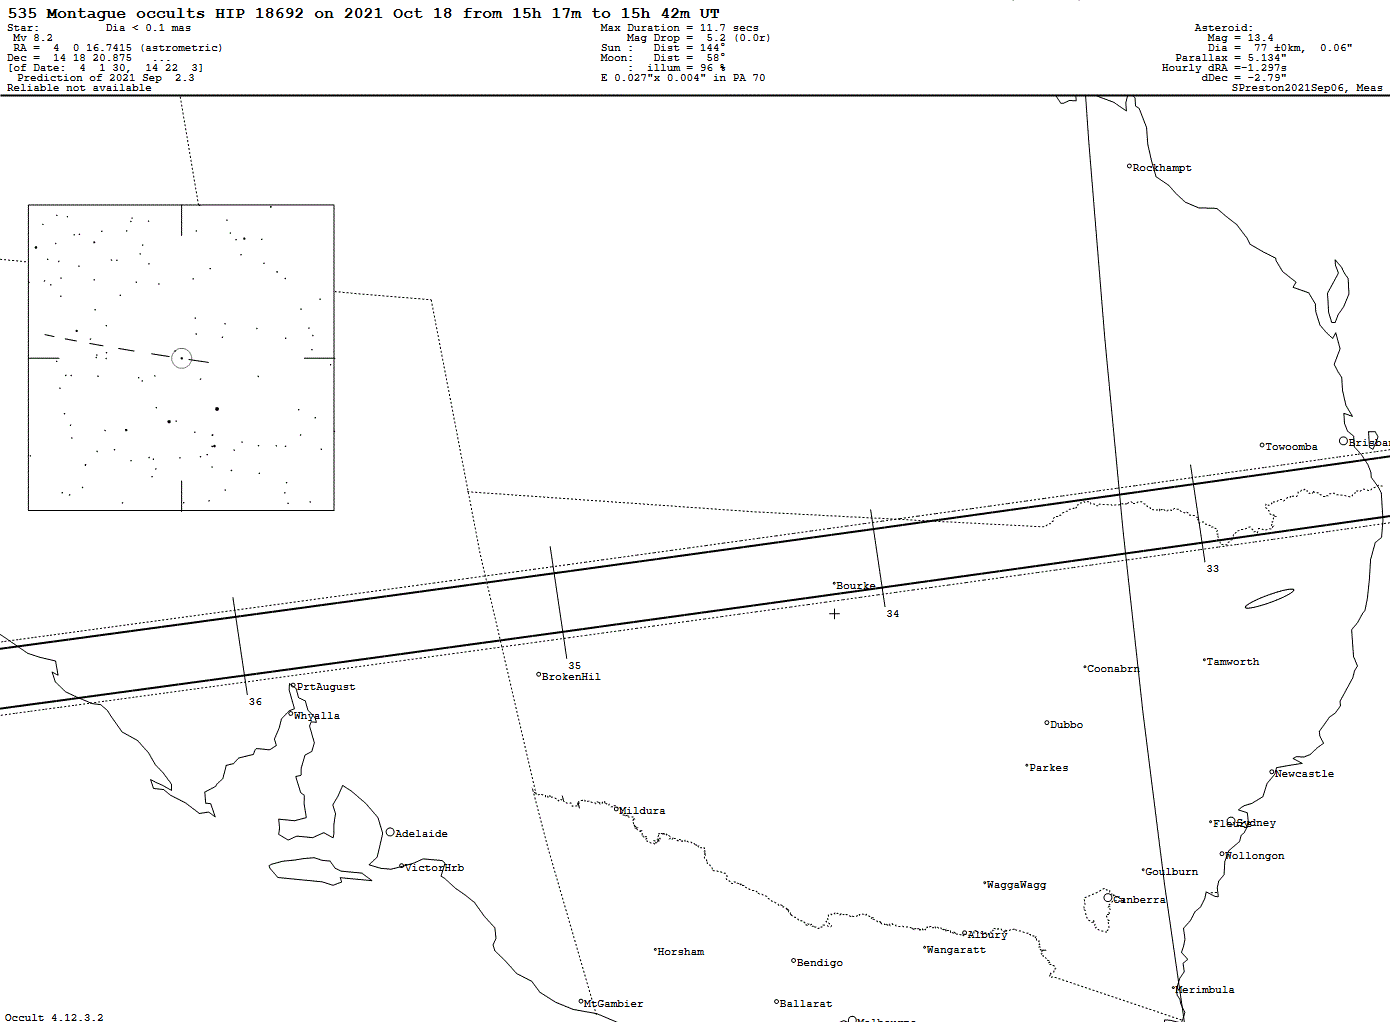 Montague Update Map